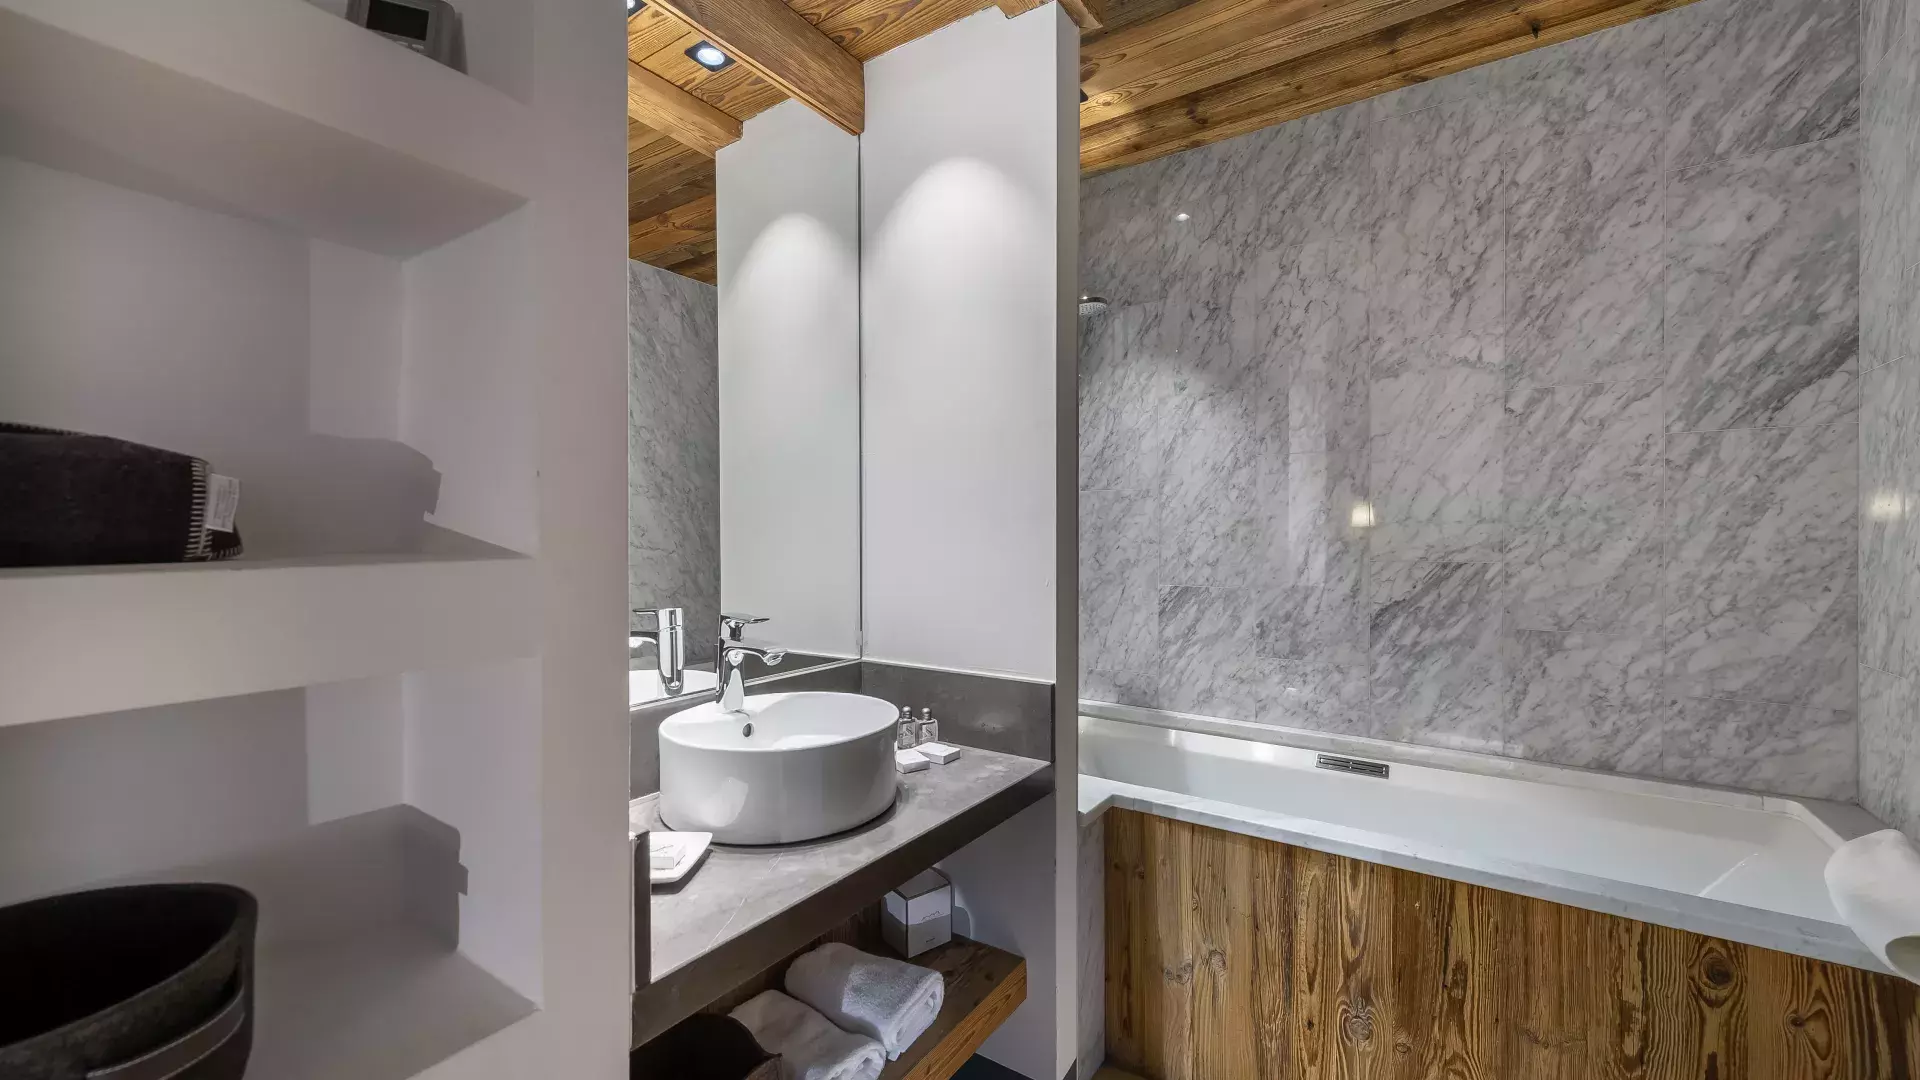 Appartement Penthouse Savoie 1 - Location chalets Covarel - Val d'Isère Alpes - France - Salle de bain 1